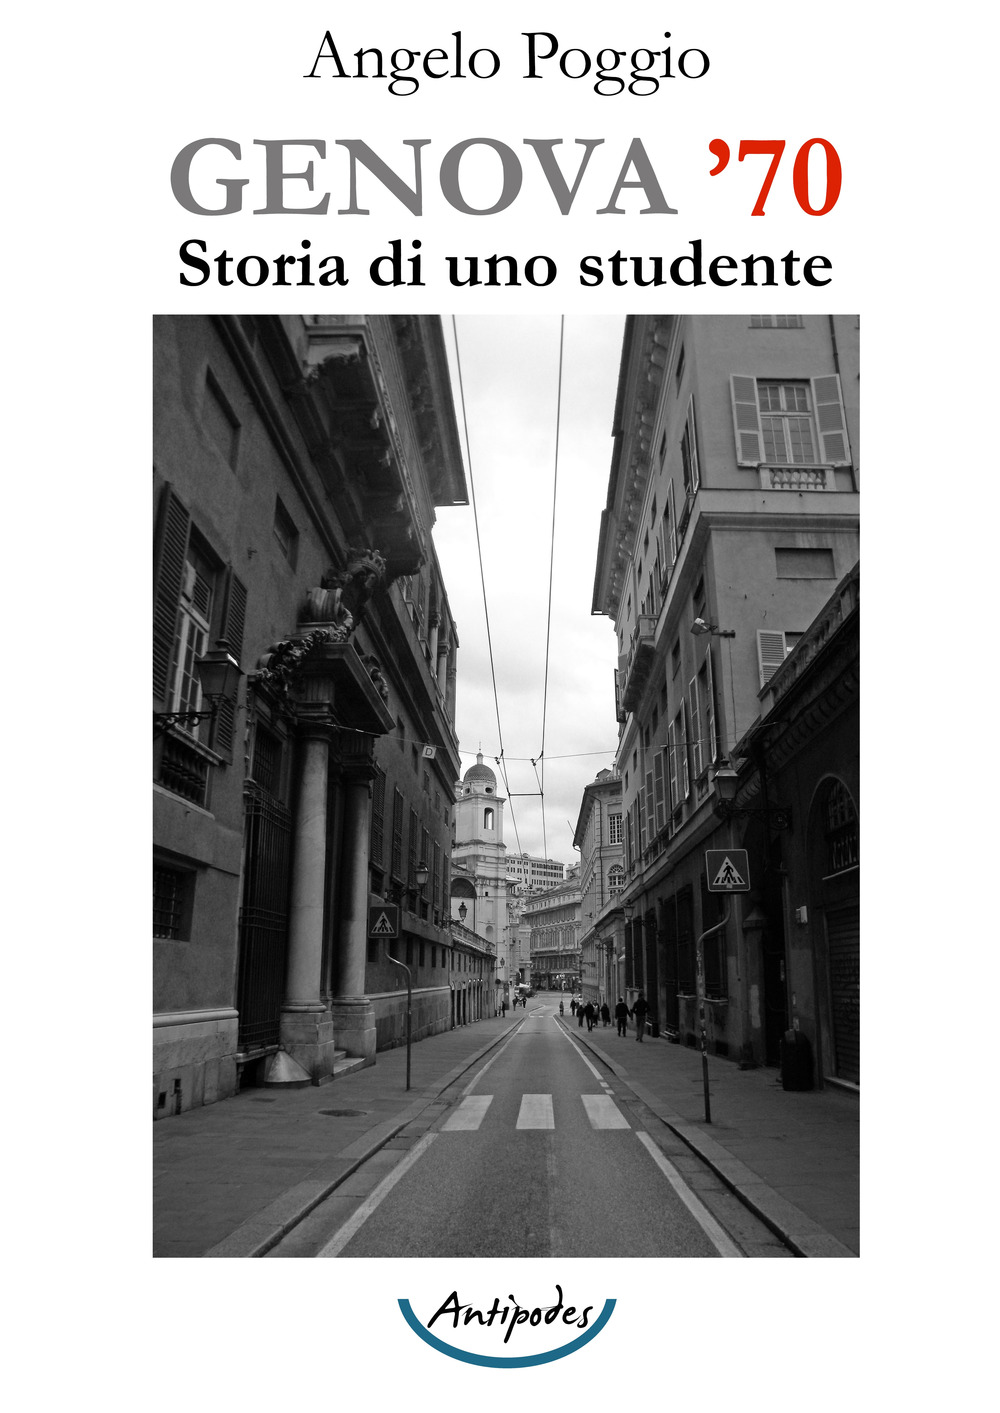 Genova '70. Storia di uno studente